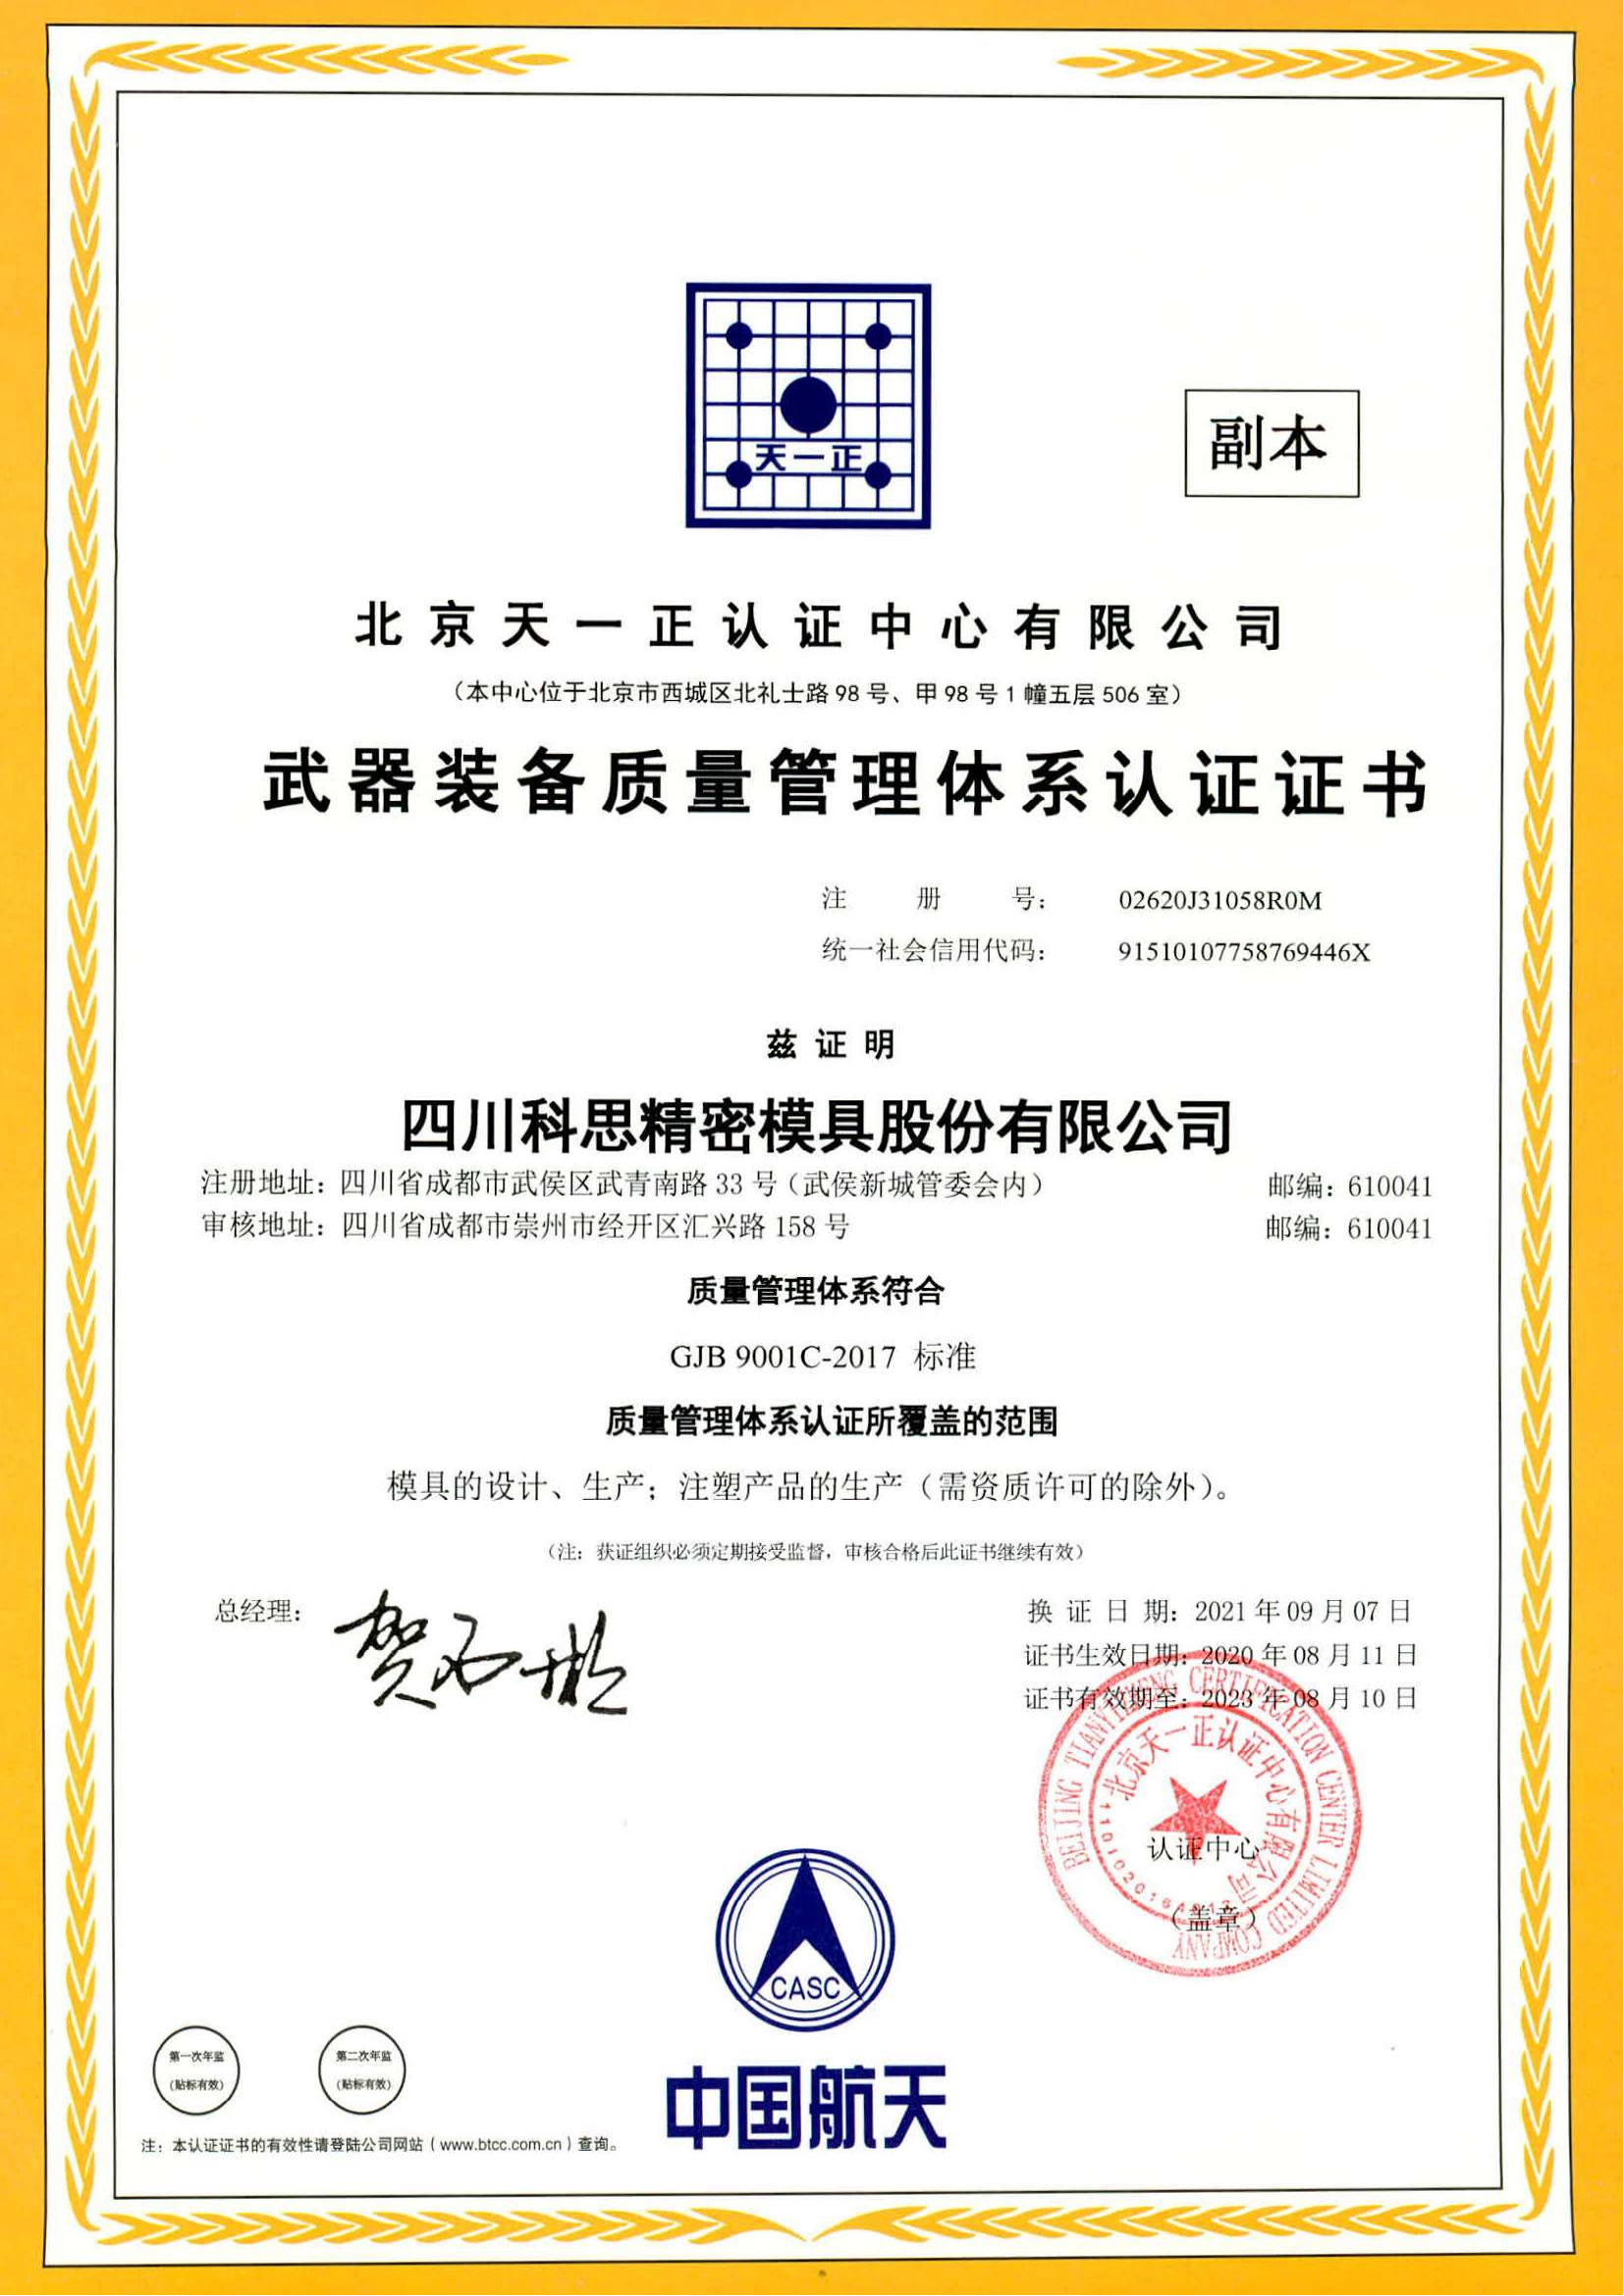 GJB9001C-2017武器装备质量管理体系认证证书